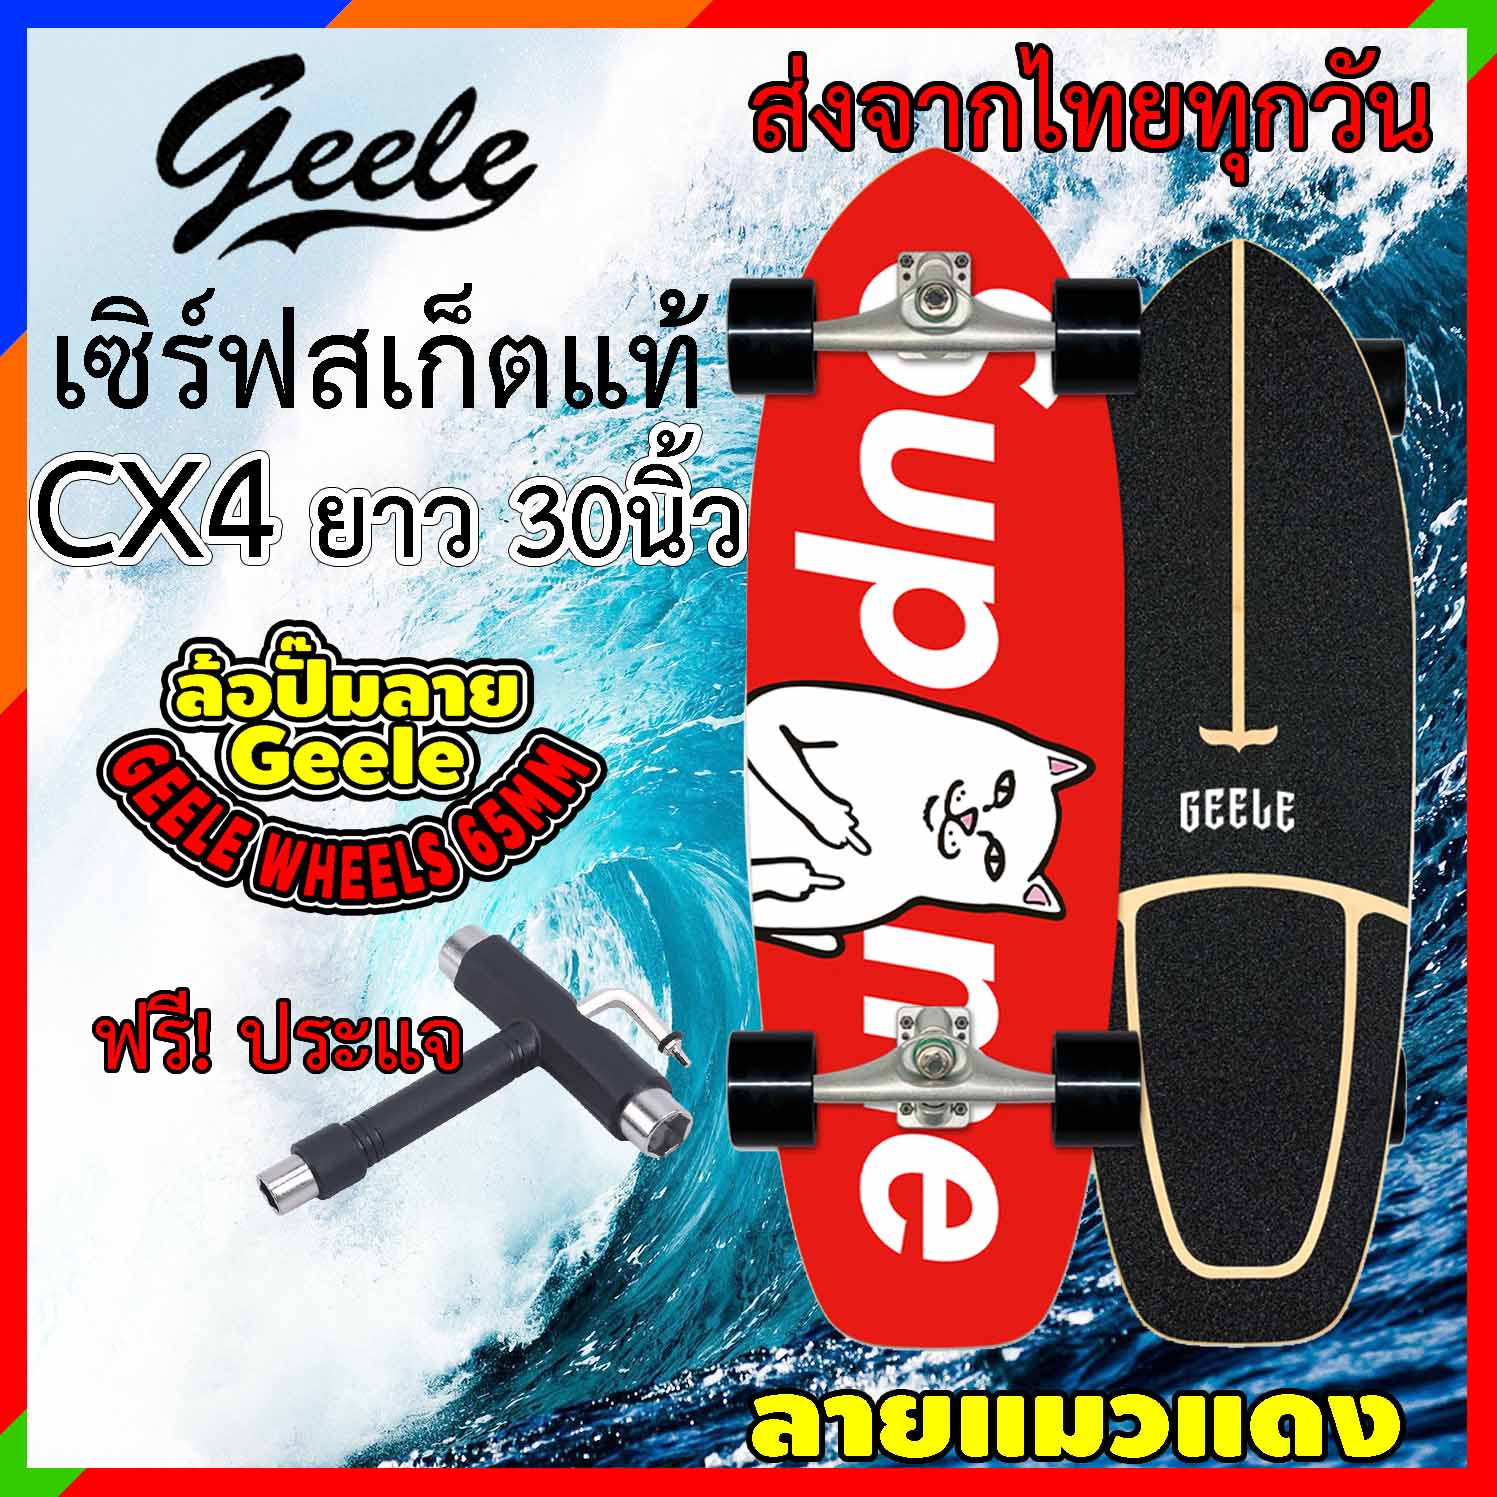 เซิร์ฟสเก็ต Geele cx4 ของแท้ ถูกสุดในไทย แถมฟรีประแจ รุ่นใหม่ ส่งจากไทย  surfskate สเก็ตบอร์ด toffee surfskate board